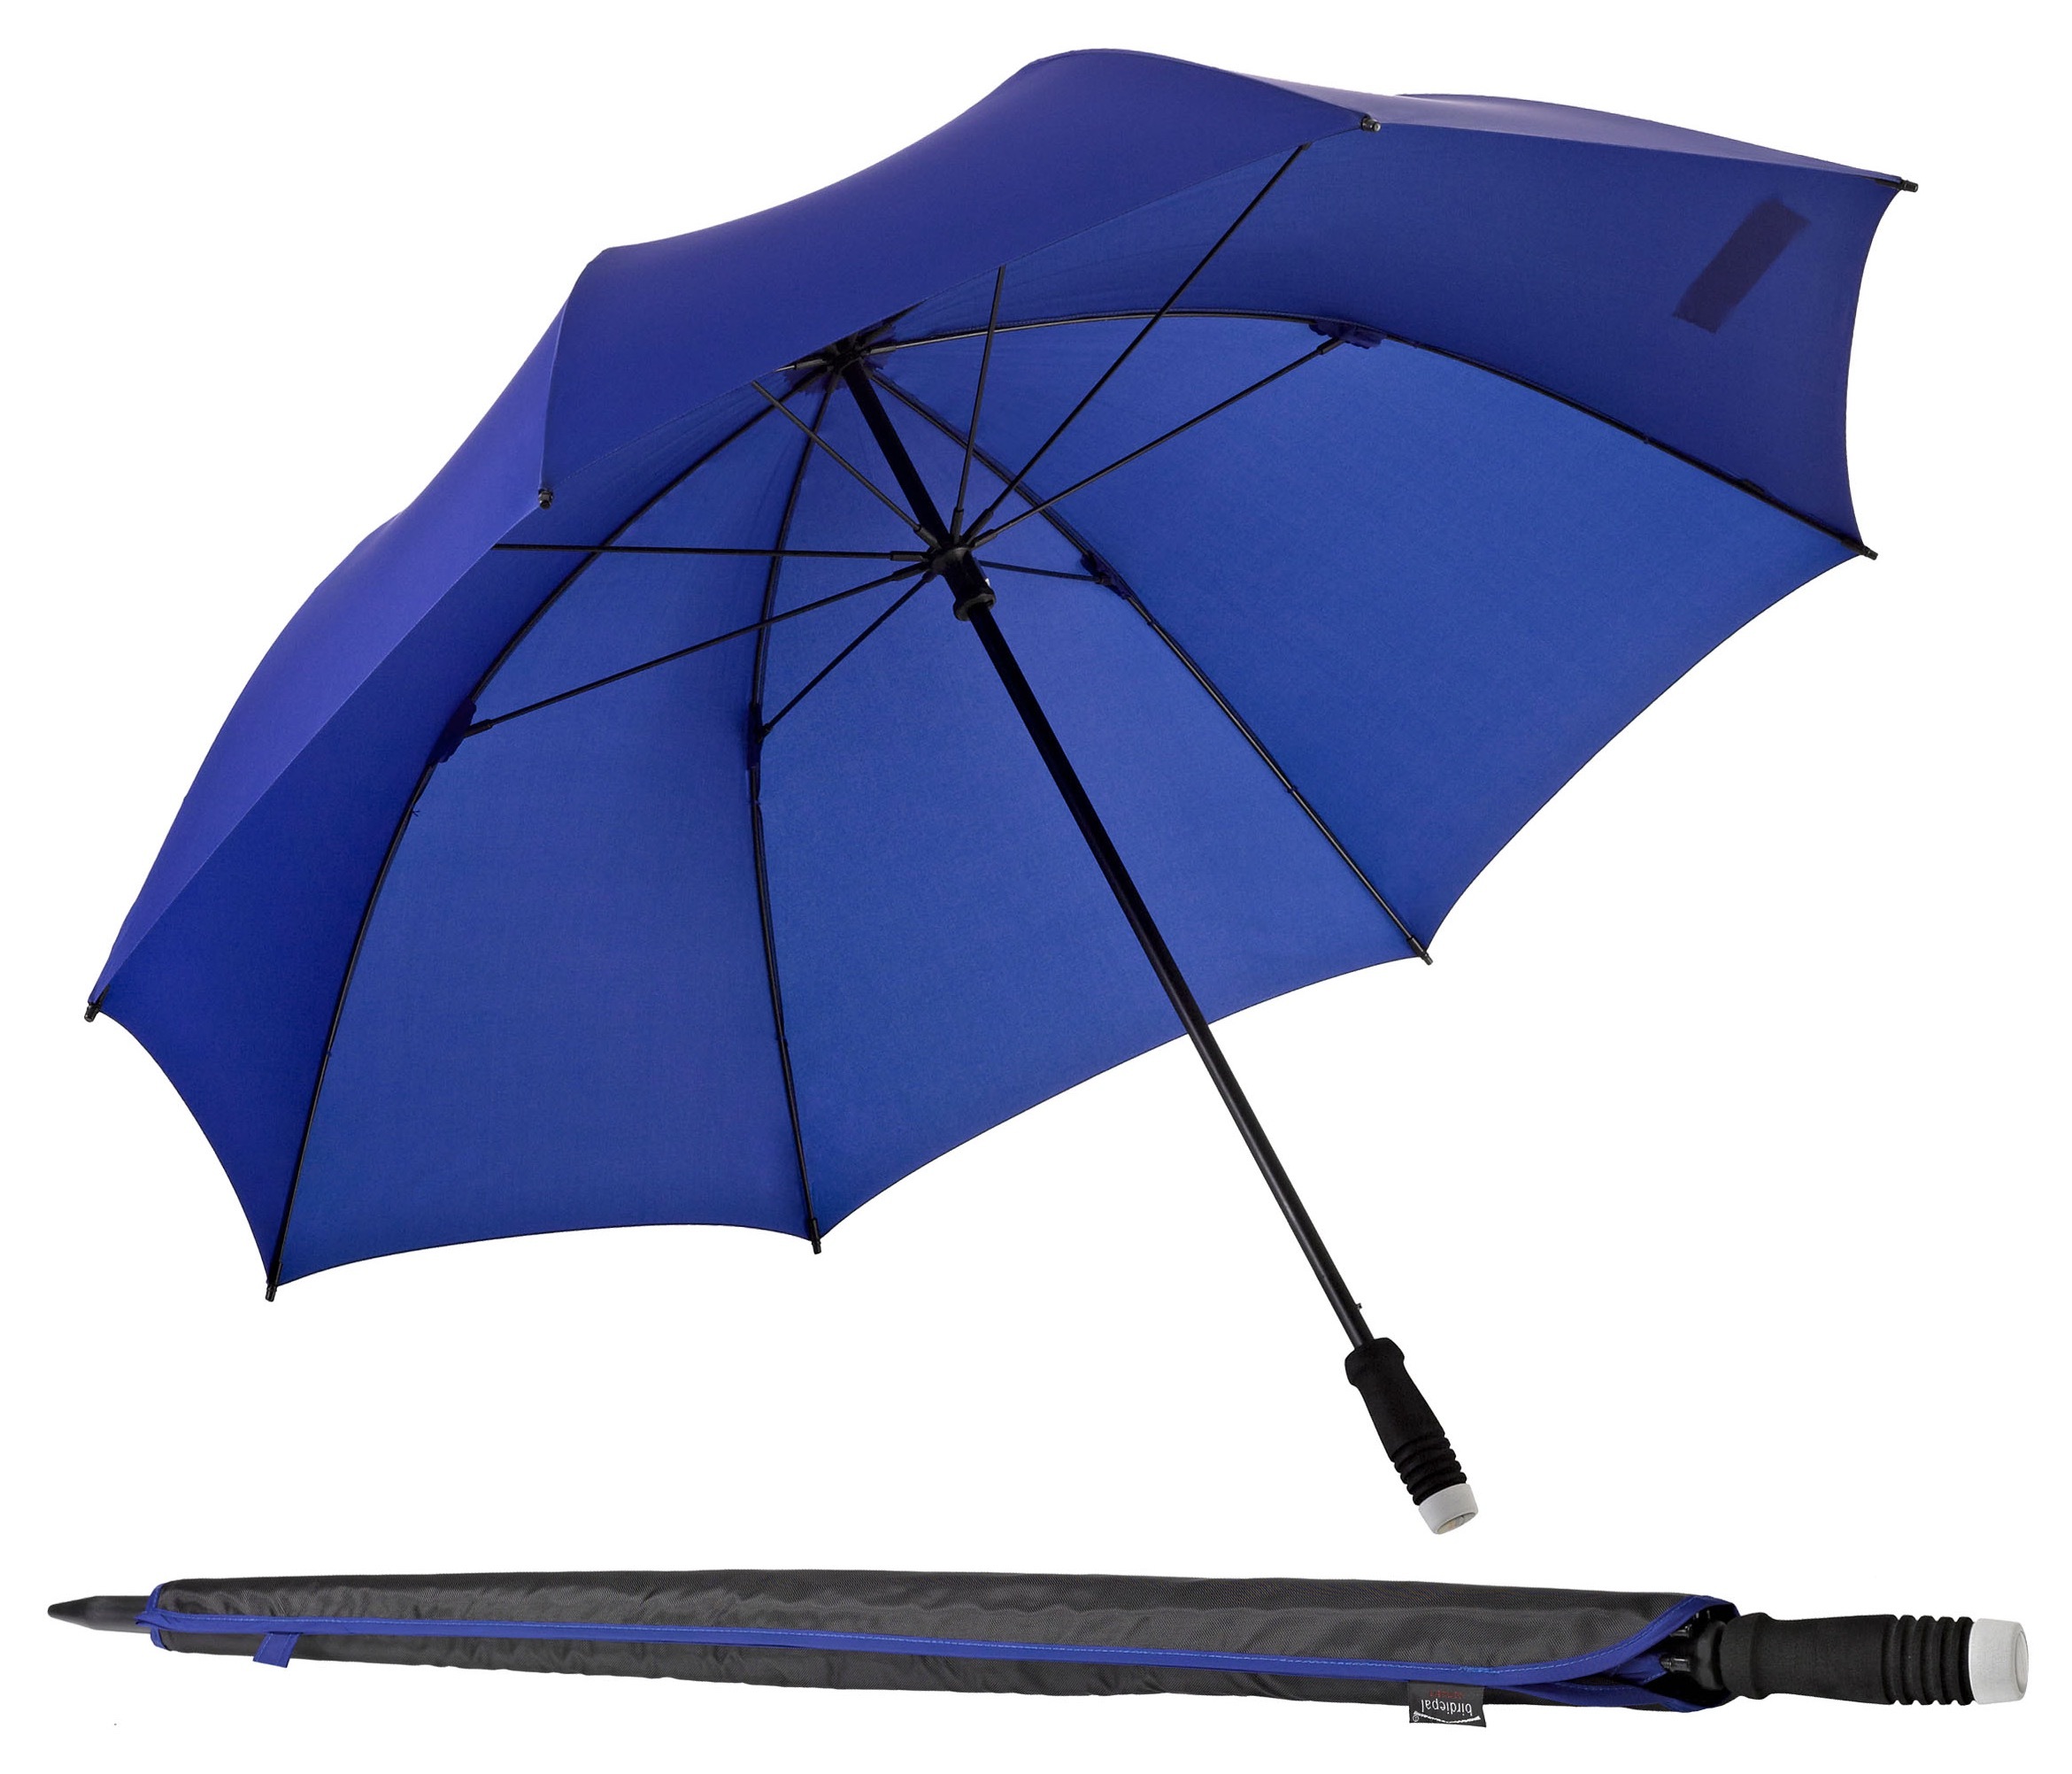 EuroSCHIRM Partnerschirm "birdiepal compact", Regenschirm für Zwei, mit extra großem Dach